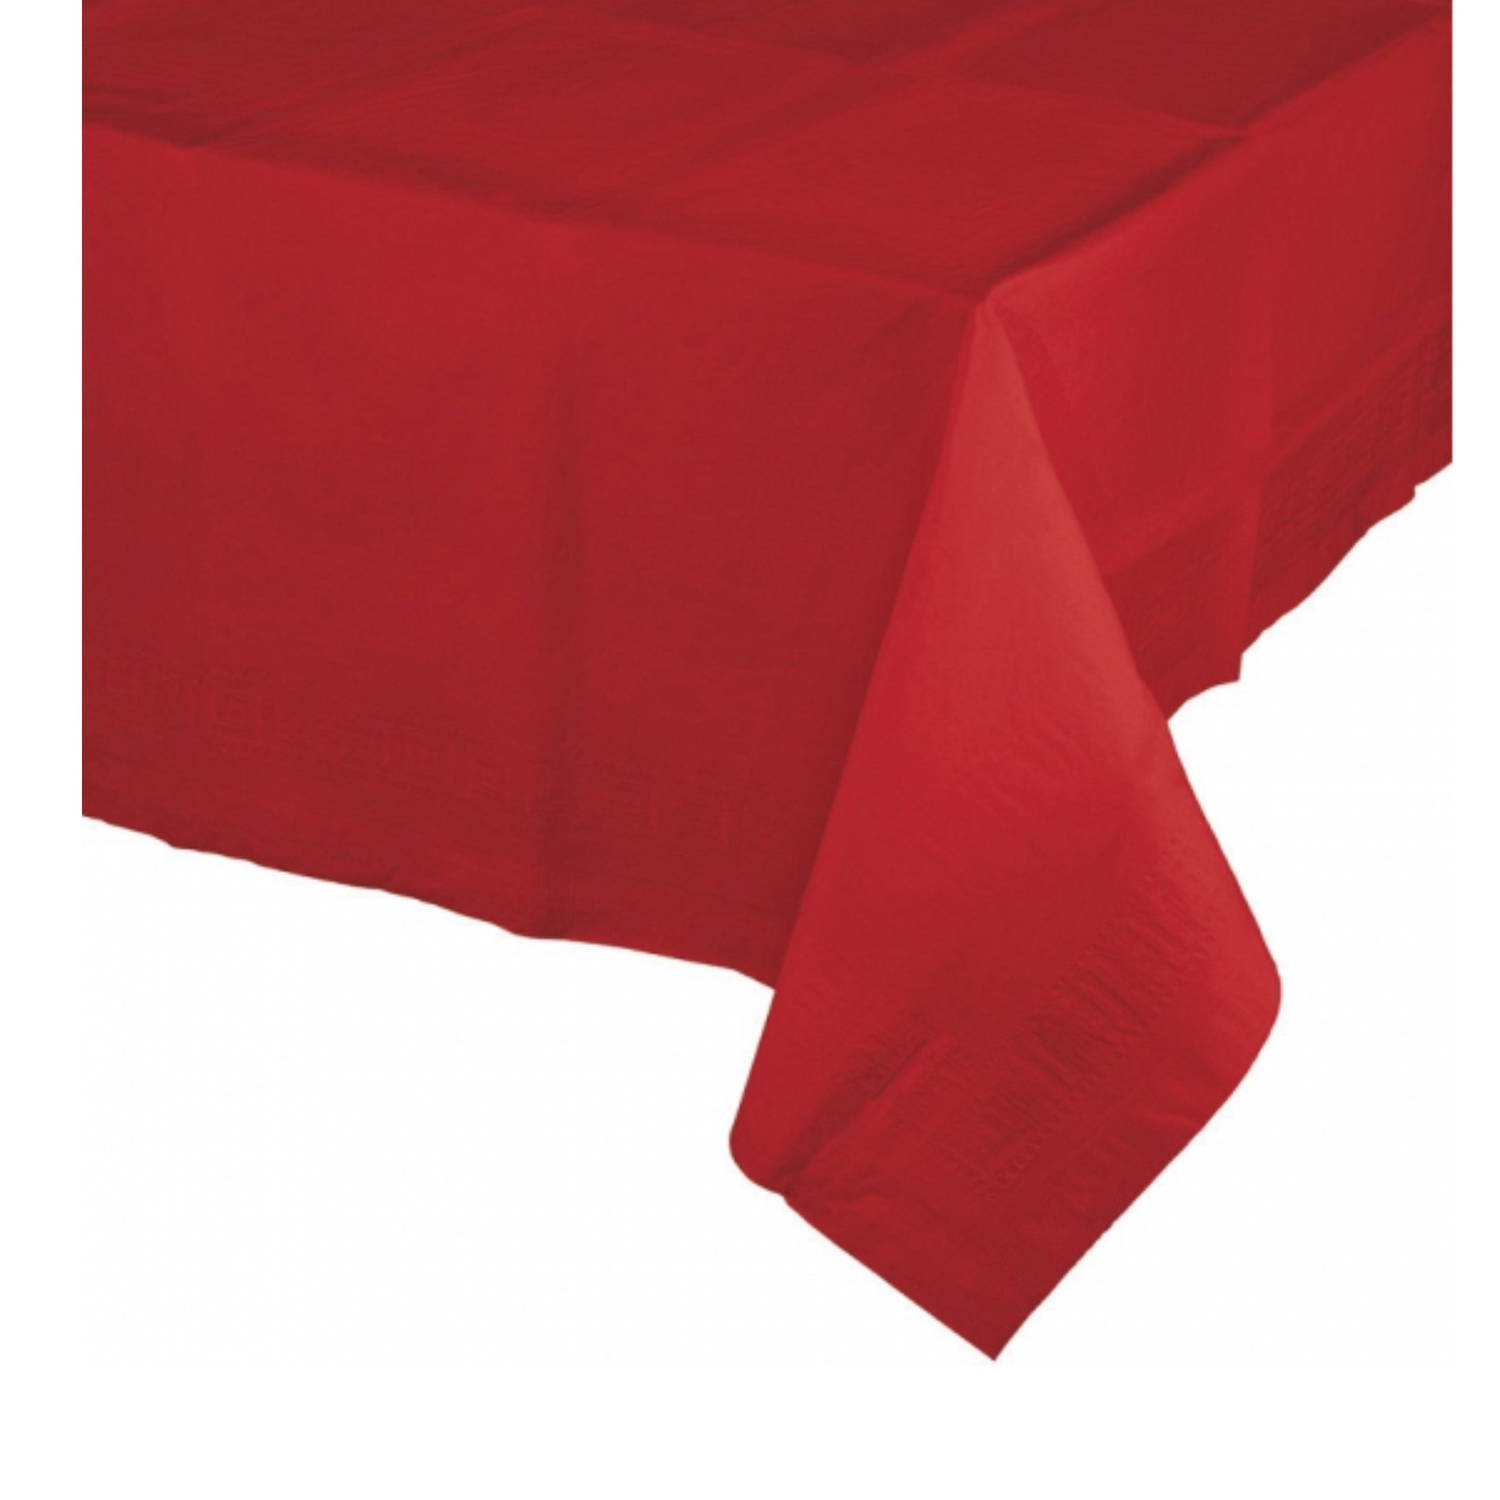 moeilijk Zeg opzij Diplomatieke kwesties Tafelkleed rood 274 x 137 cm - Feesttafelkleden | Blokker